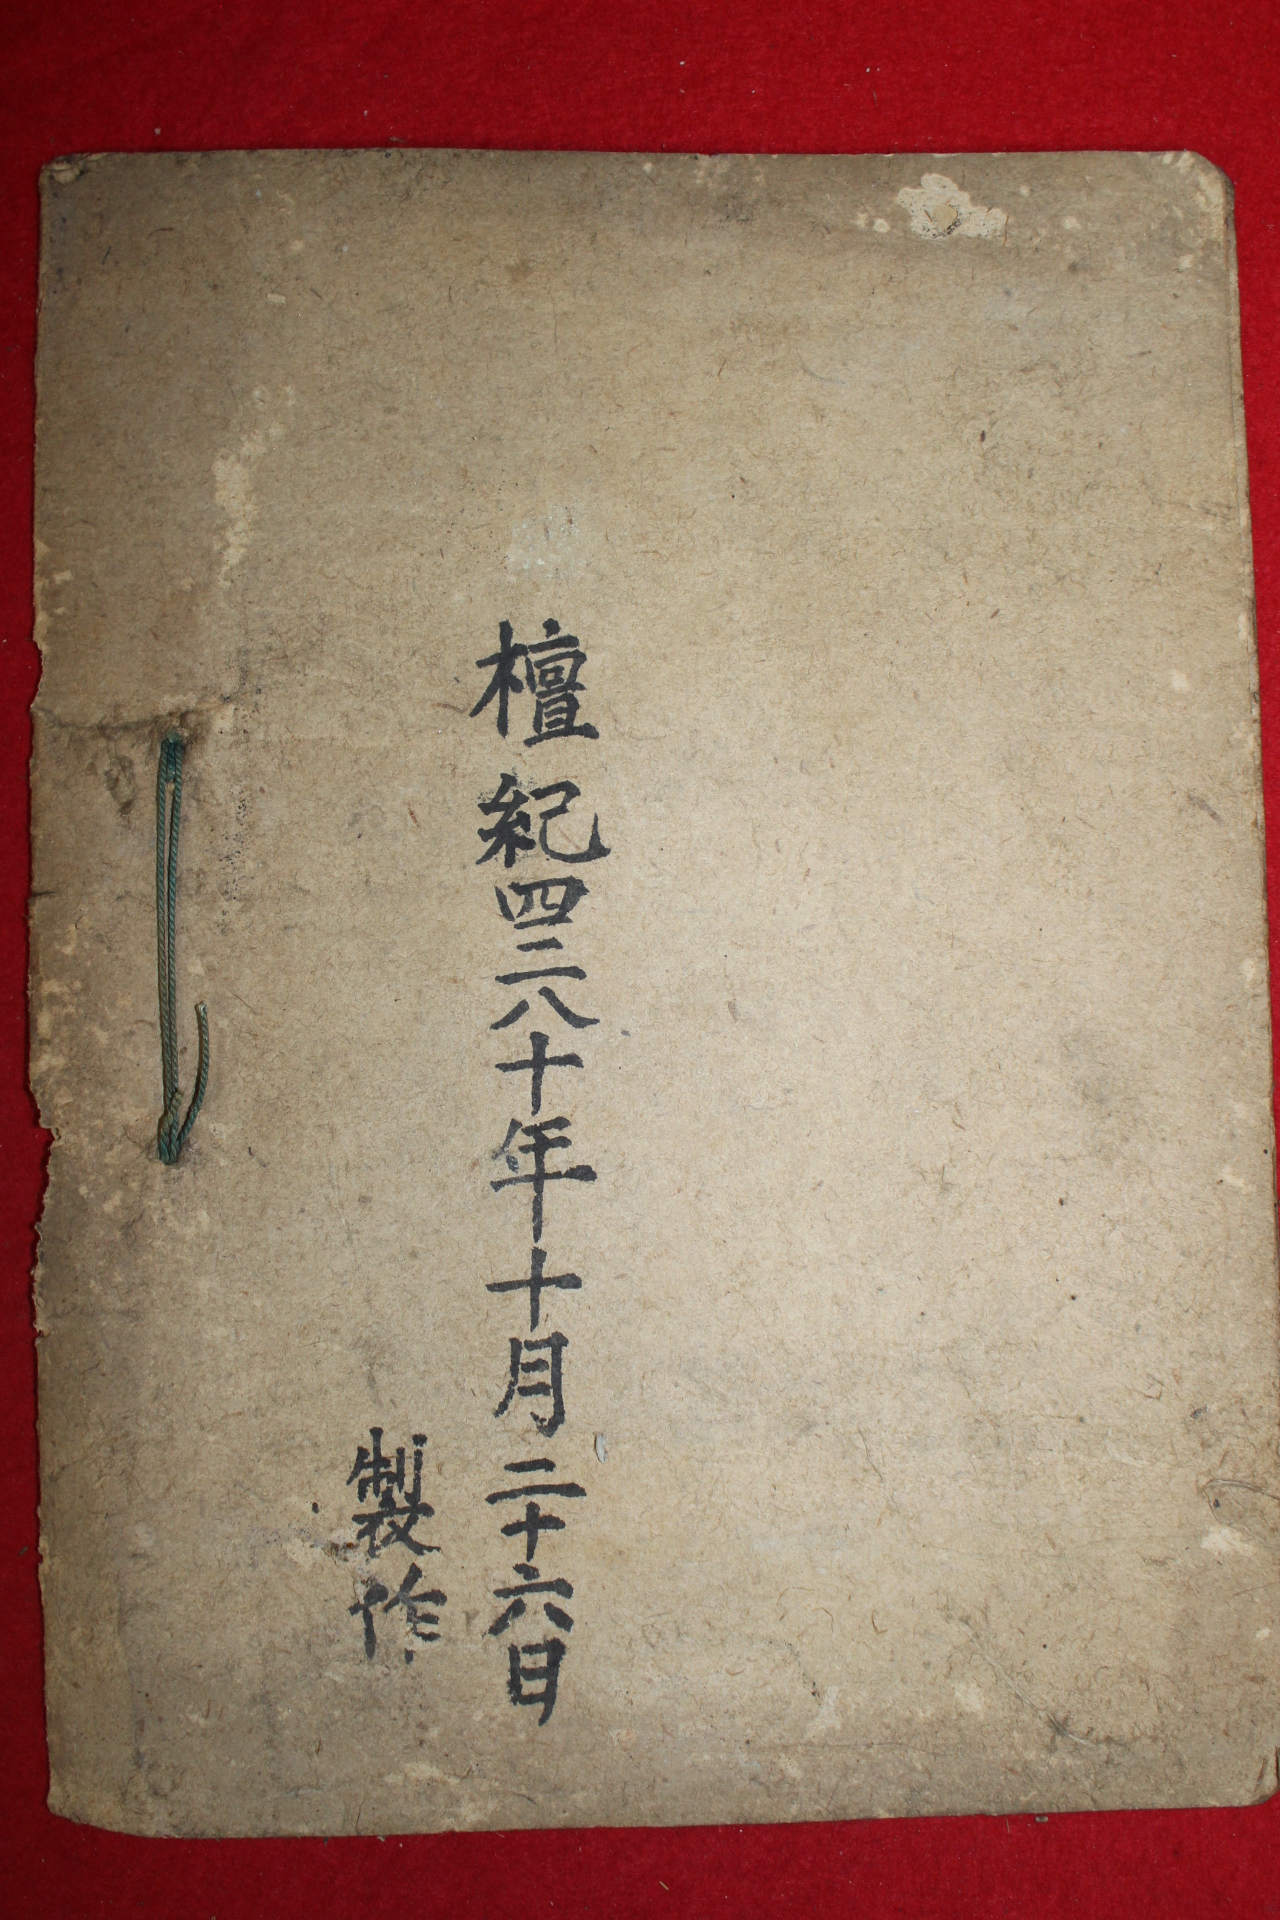 1947년 필사본 풍천노씨세보(豊川盧氏世譜)